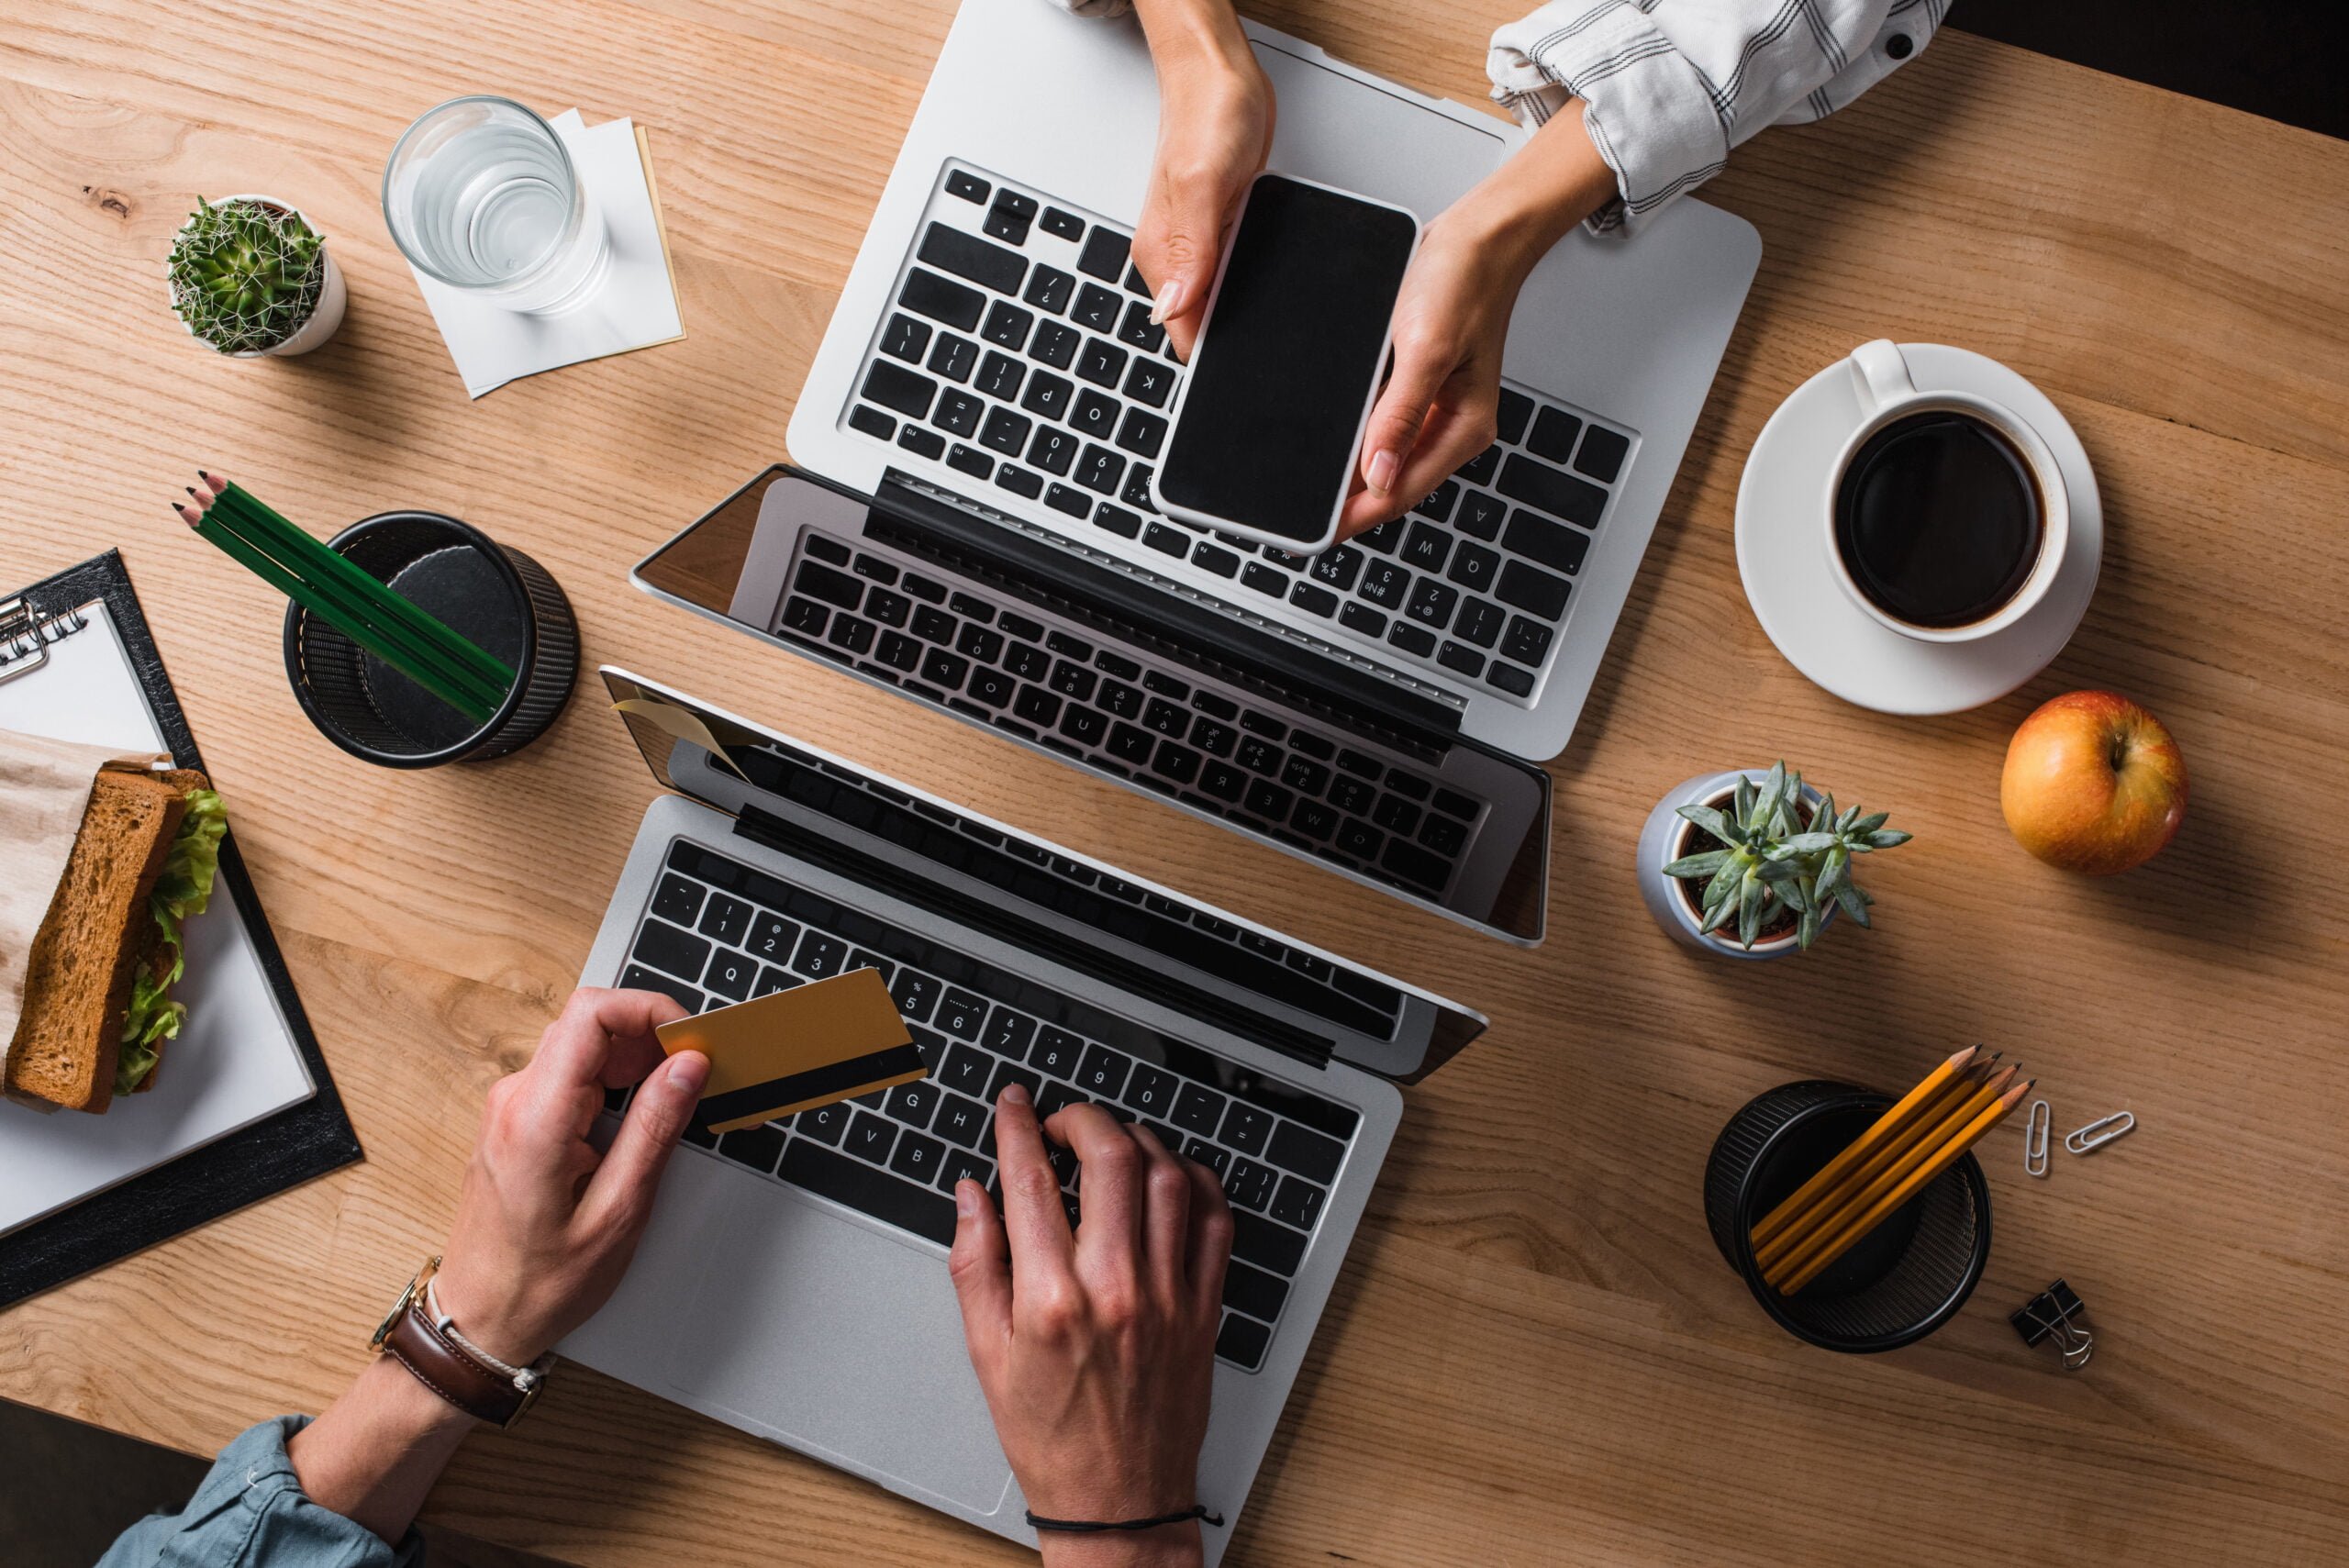 Dwie osoby pracują przy biurku z laptopami, jedna wkłada kartę kredytową do slotu na laptopie, a druga trzyma smartfona nad klawiaturą; na biurku kawa, kanapka, jabłko i artykuły biurowe.